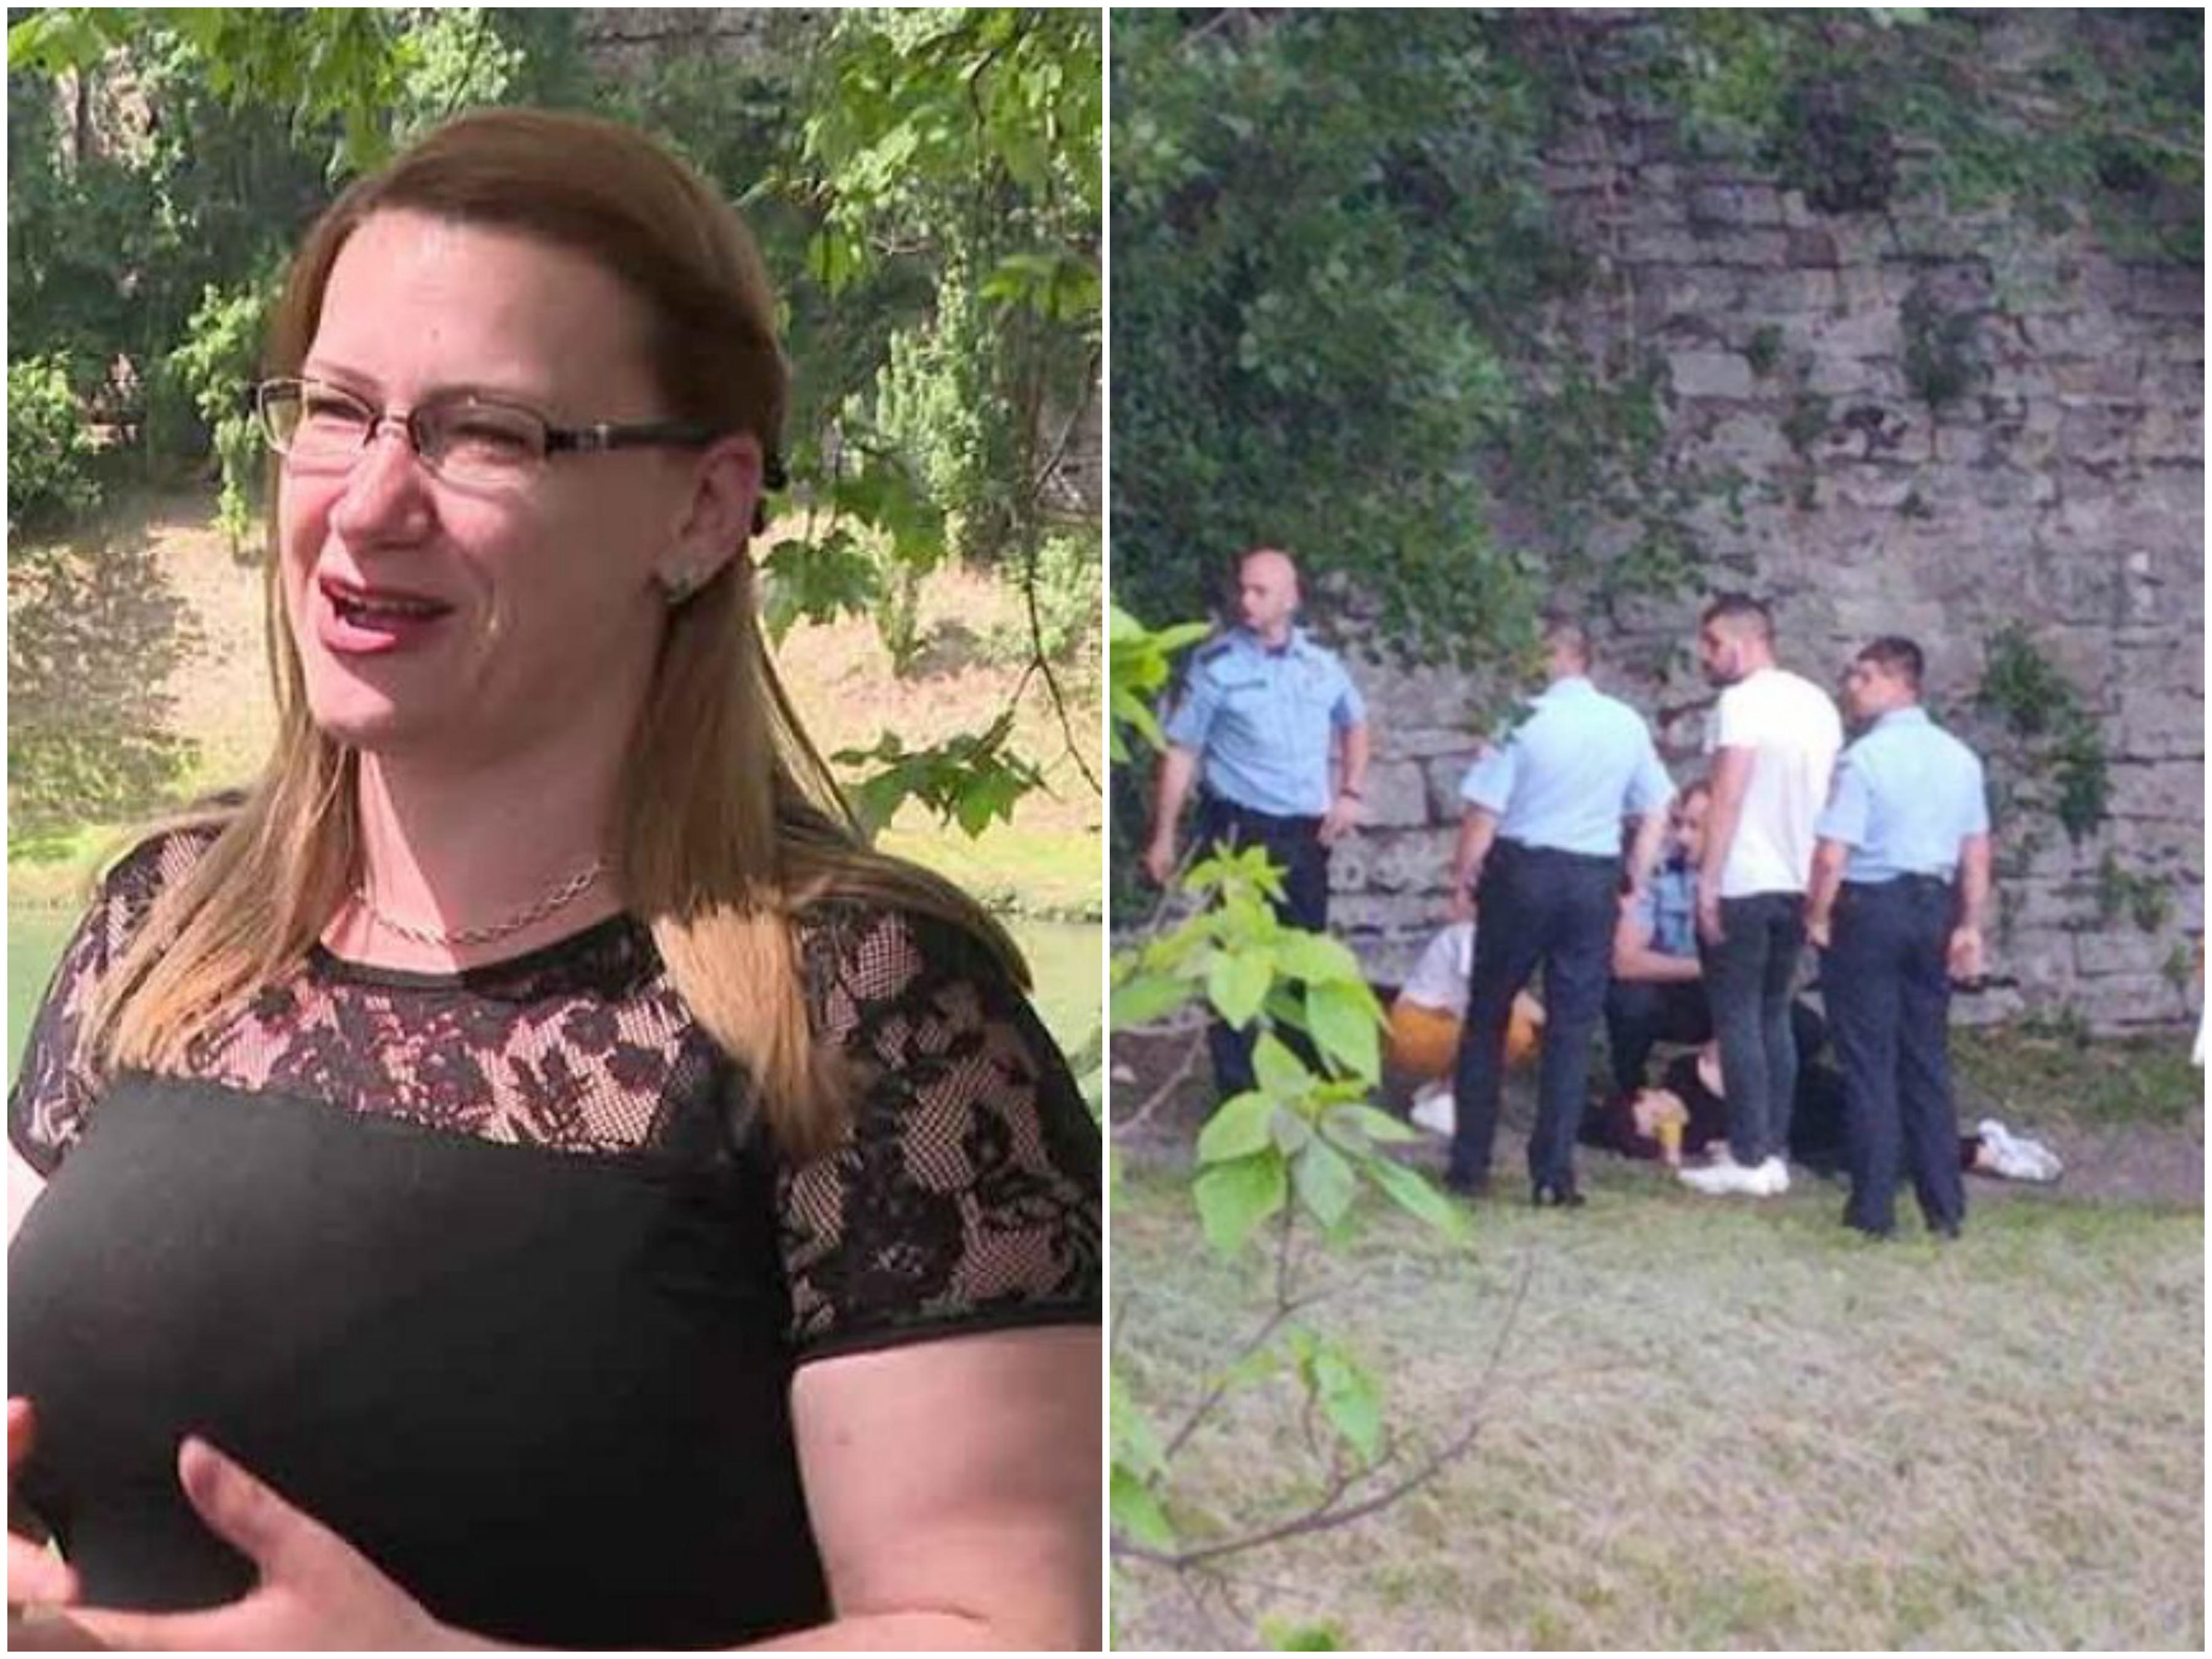 Merima Gajić: Bez razmišljanja sam preskočila ogradu i spustila se niz brdašce prema rijeci - Avaz